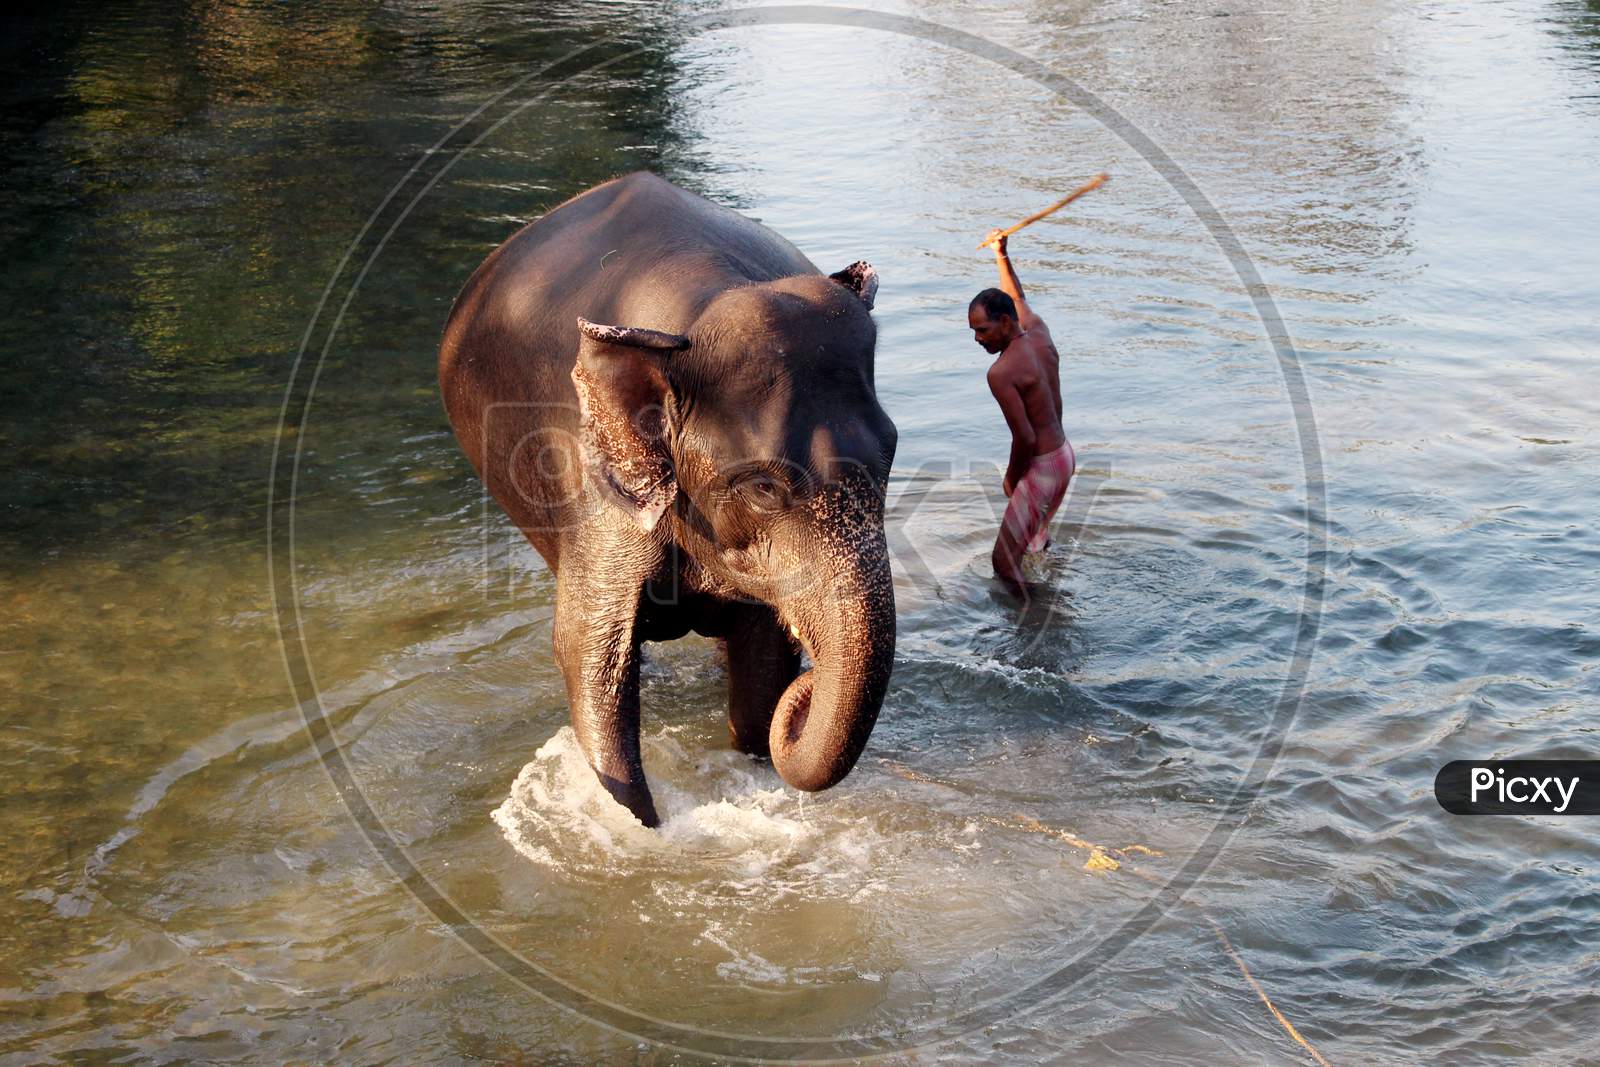 An Elephant bathing in a Water Flow